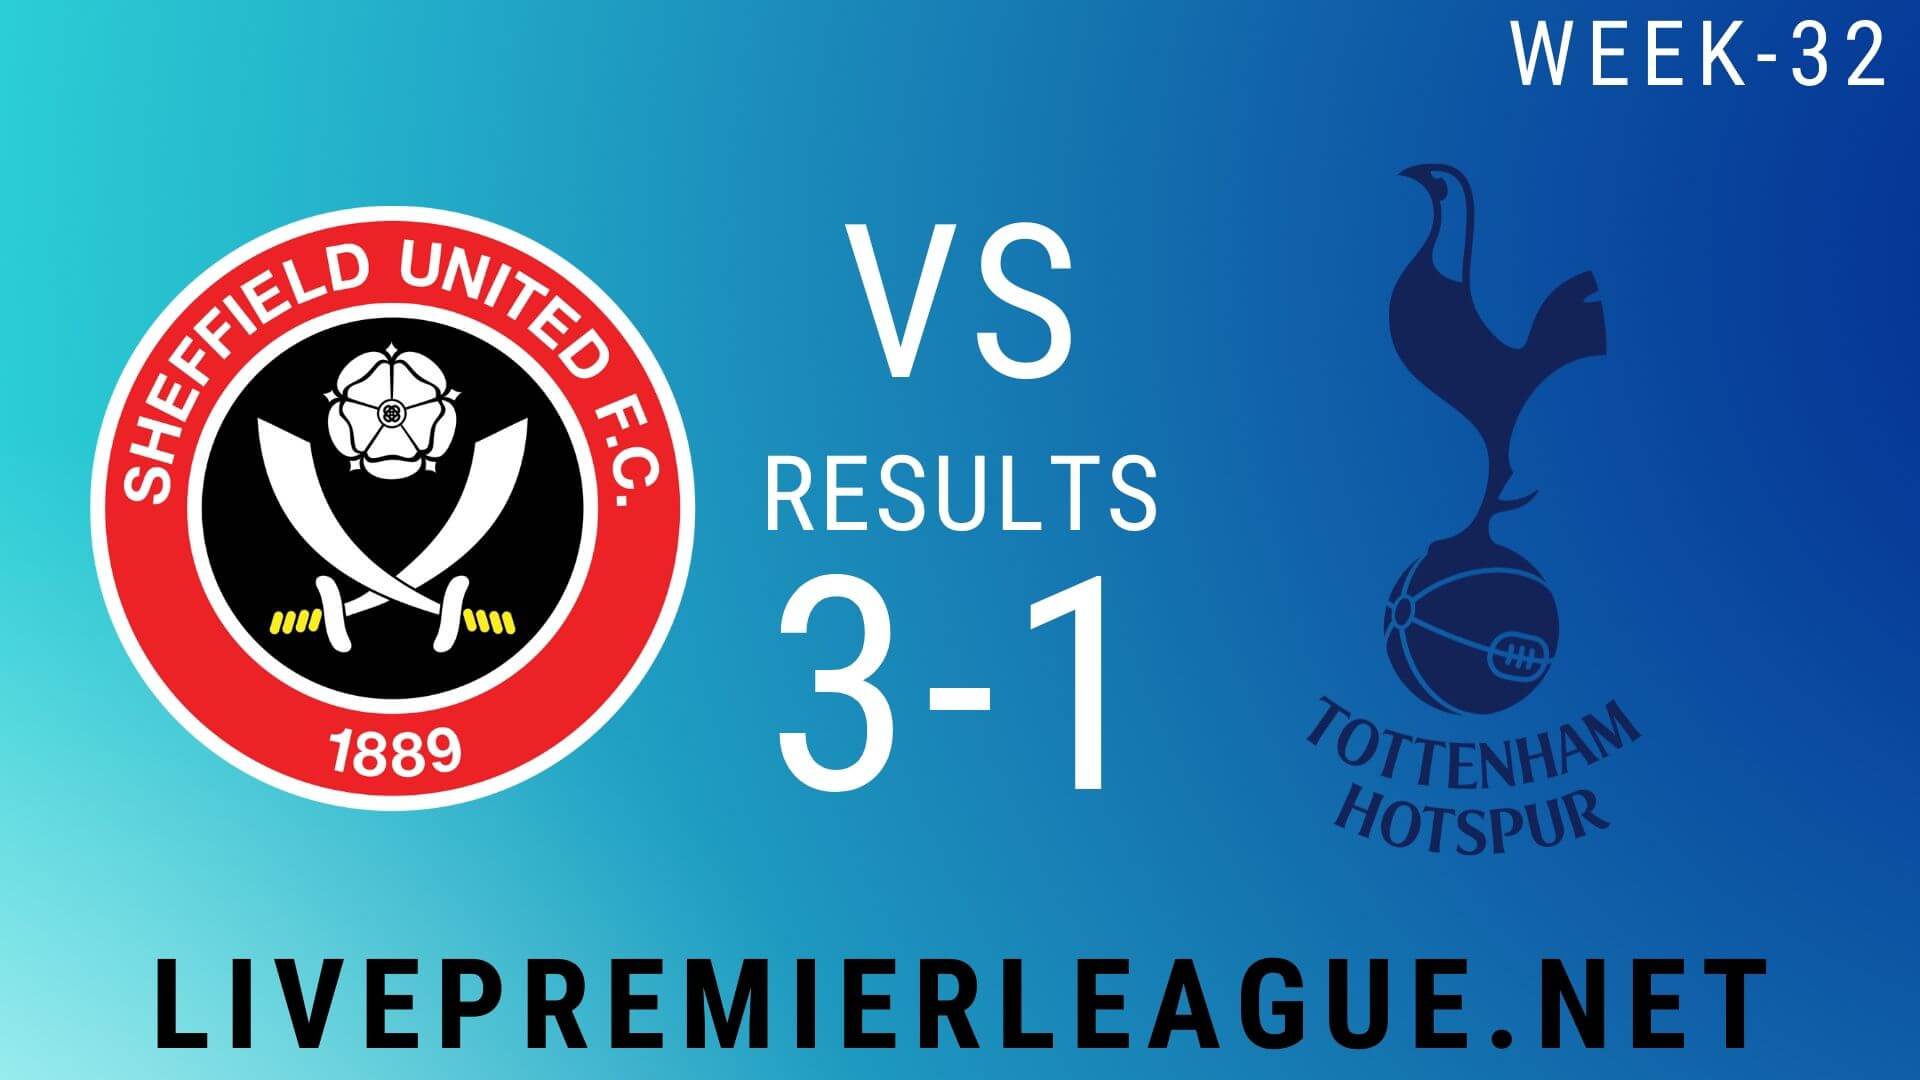 Sheffield United Vs Tottenham Hotspur | Week 32 Result 2020